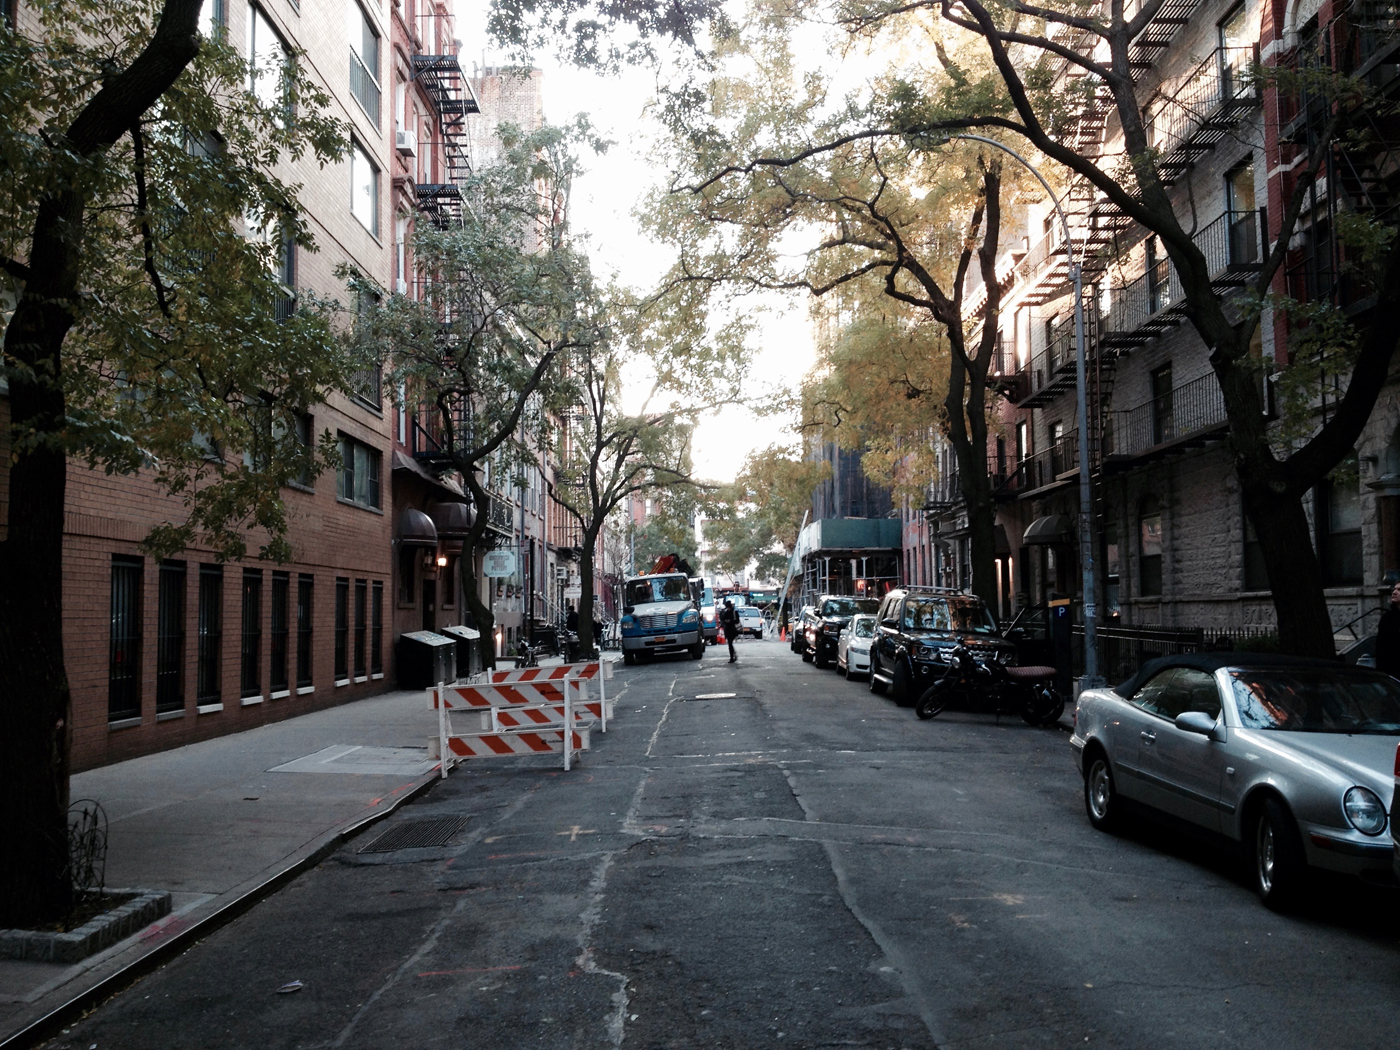 Bob Dylan’s Greenwich Village: A Self-Guided Walking Tour